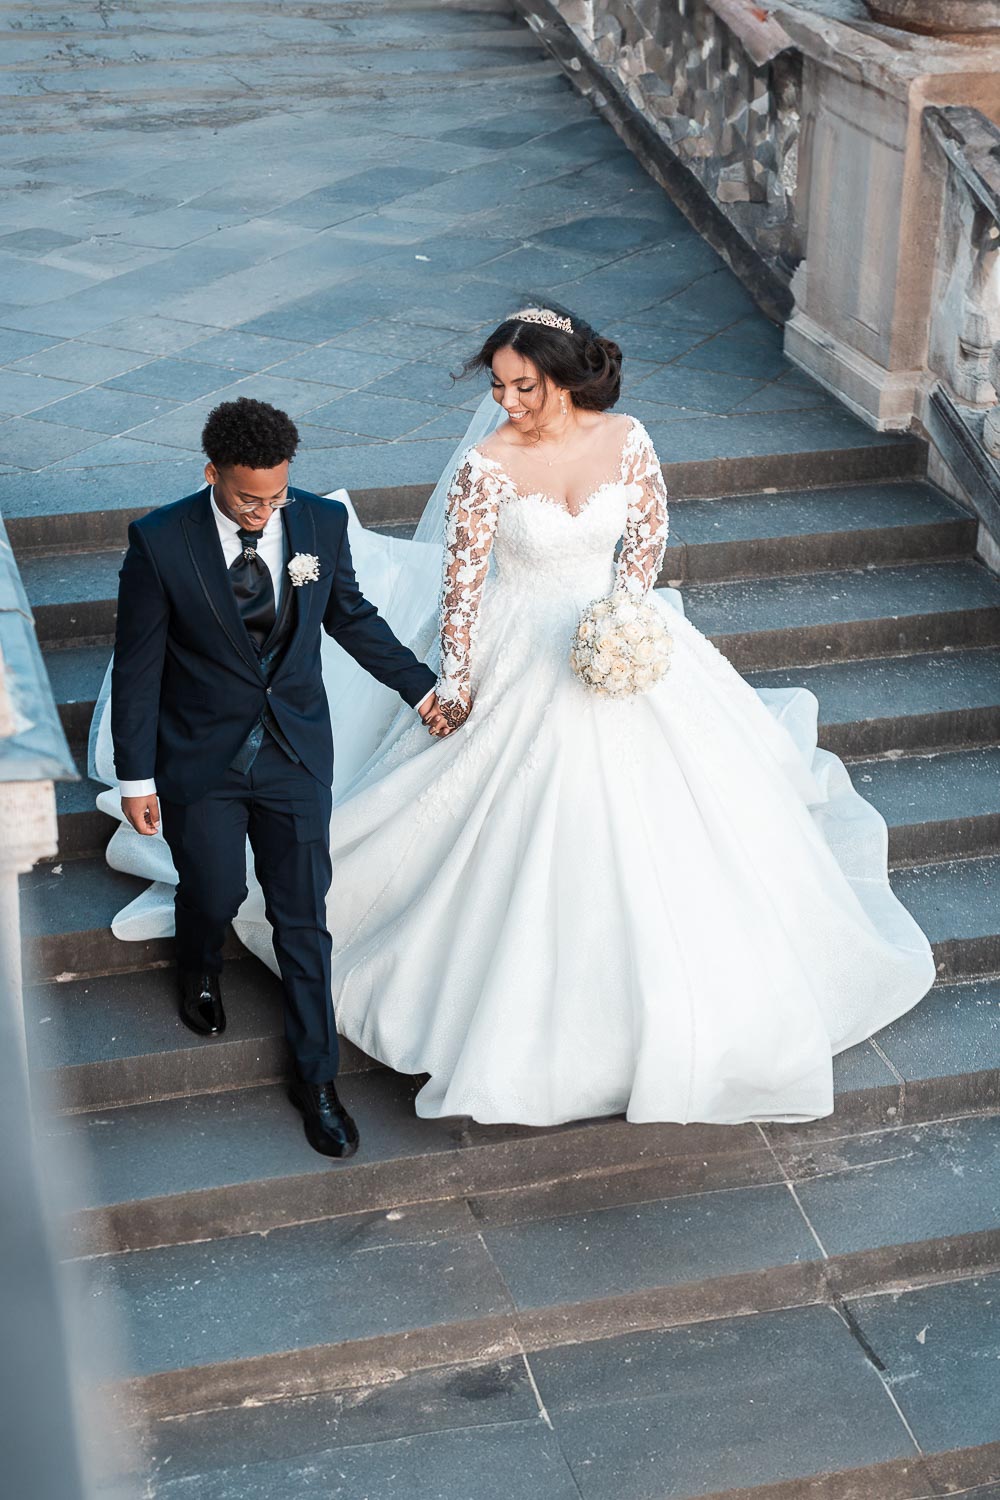 Braut und Bräutigam gehen die Treppe hinab zur Terrasse zum Schloss Augustusburg in Brühl. Ein natürliches Hochzeitsfoto welches umgestellt und aus der Situation heraus entstand.